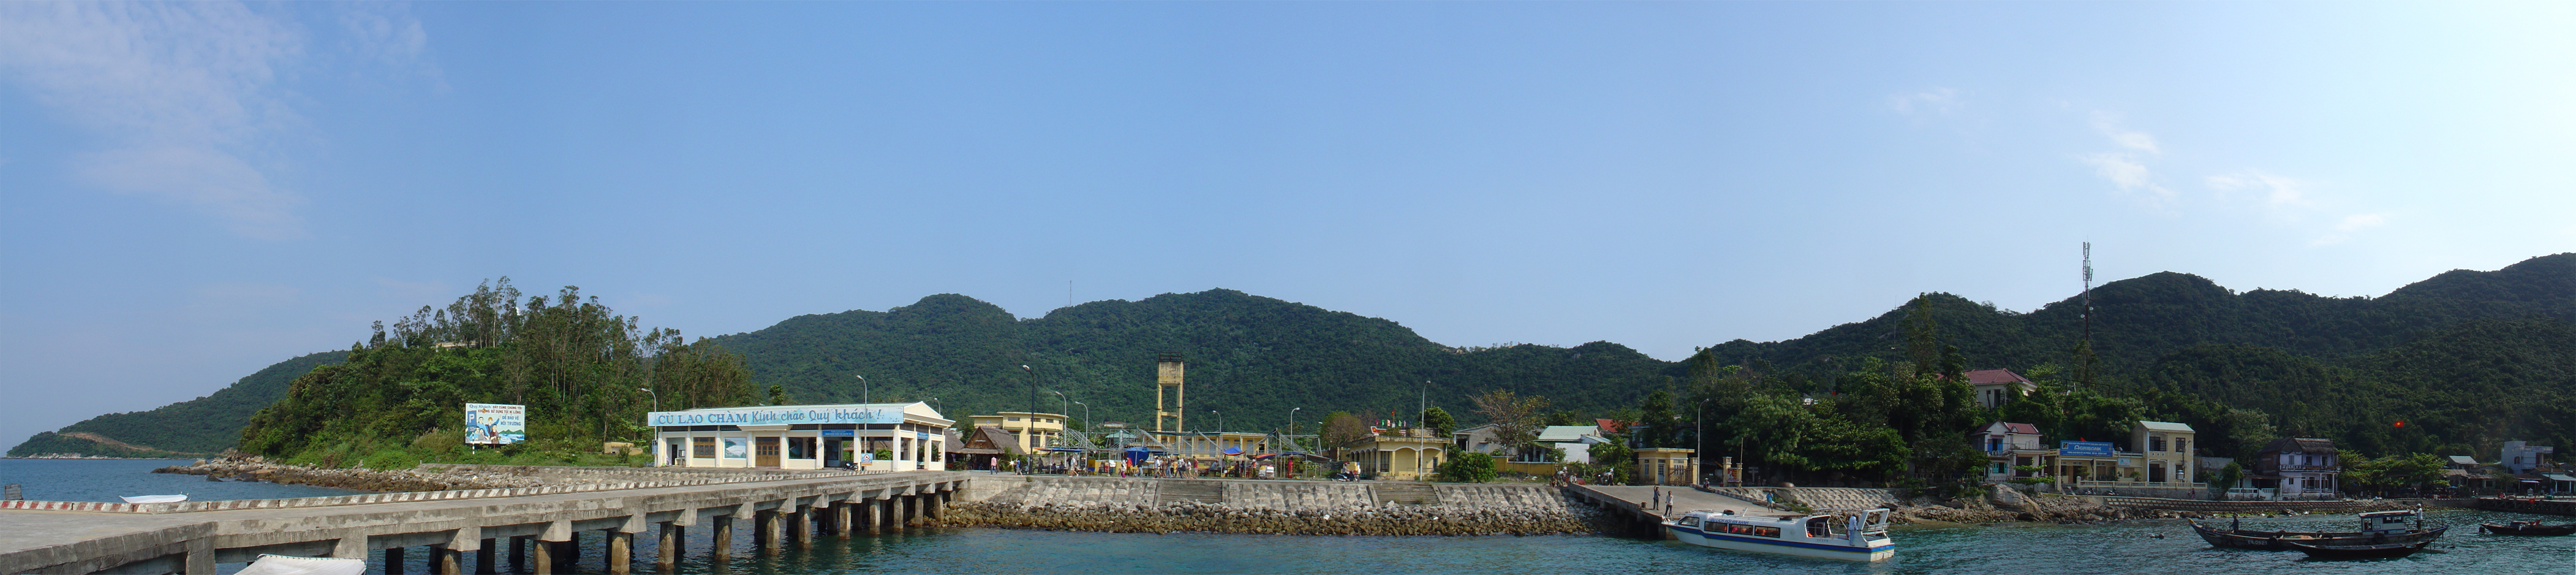  Panoramic view of bến tàu Cù Lao Chàm (15.957296,108.506427)